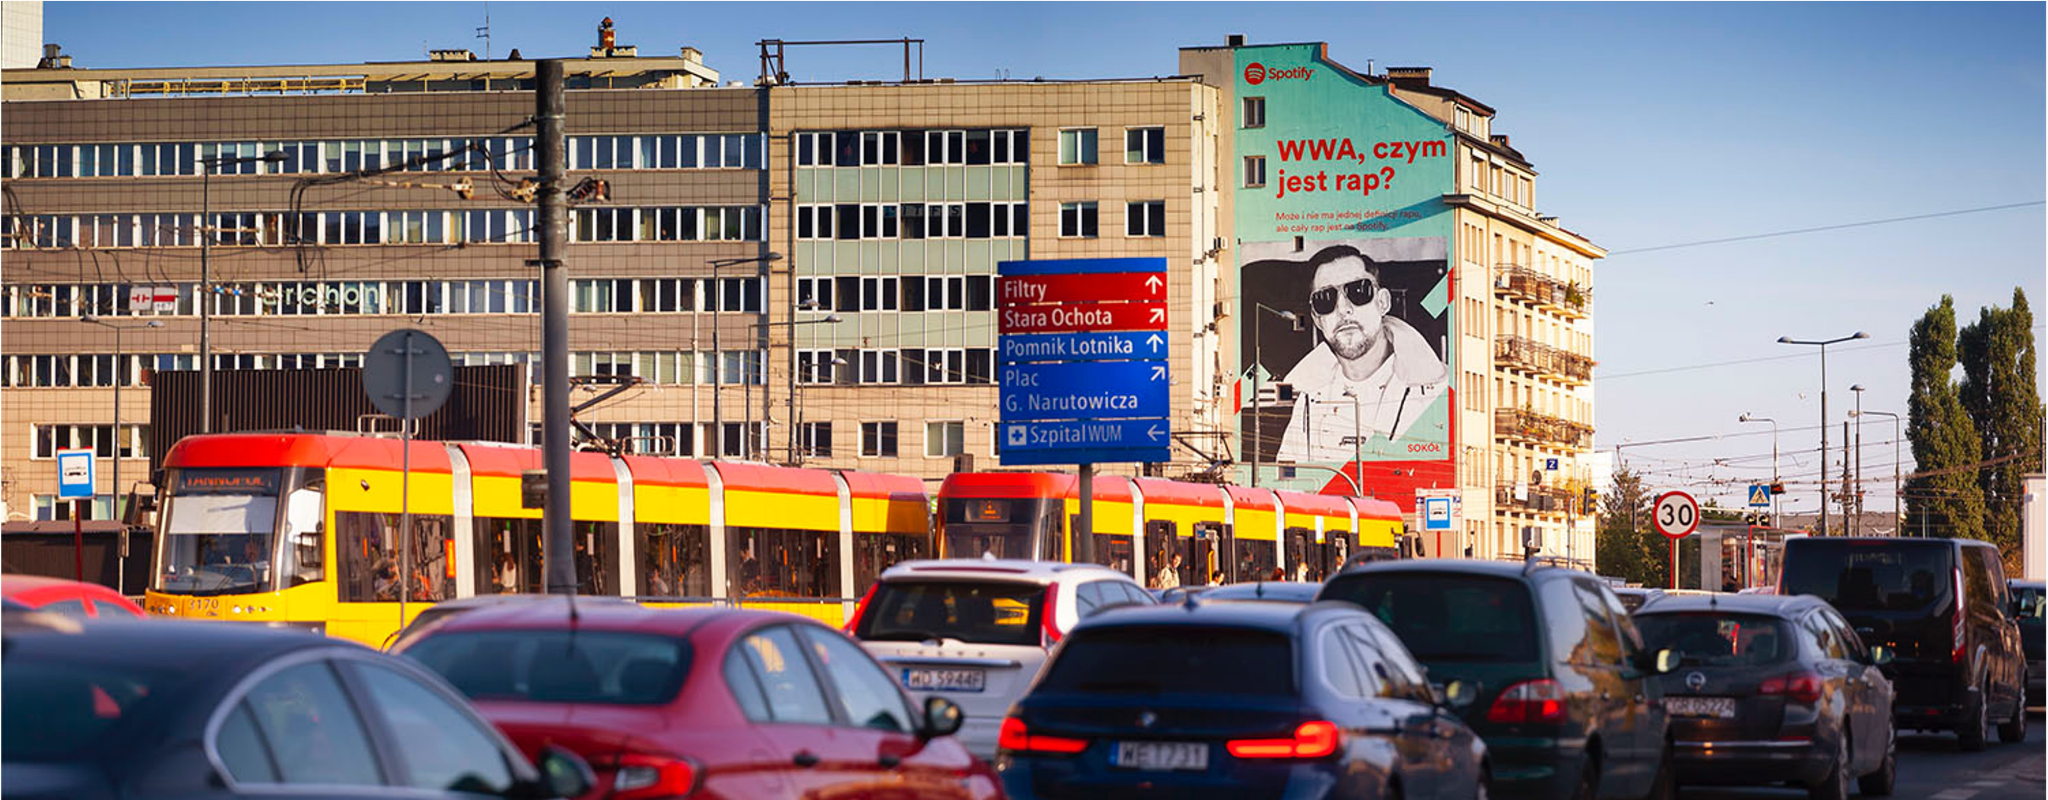 Grójecka mural Warszawa